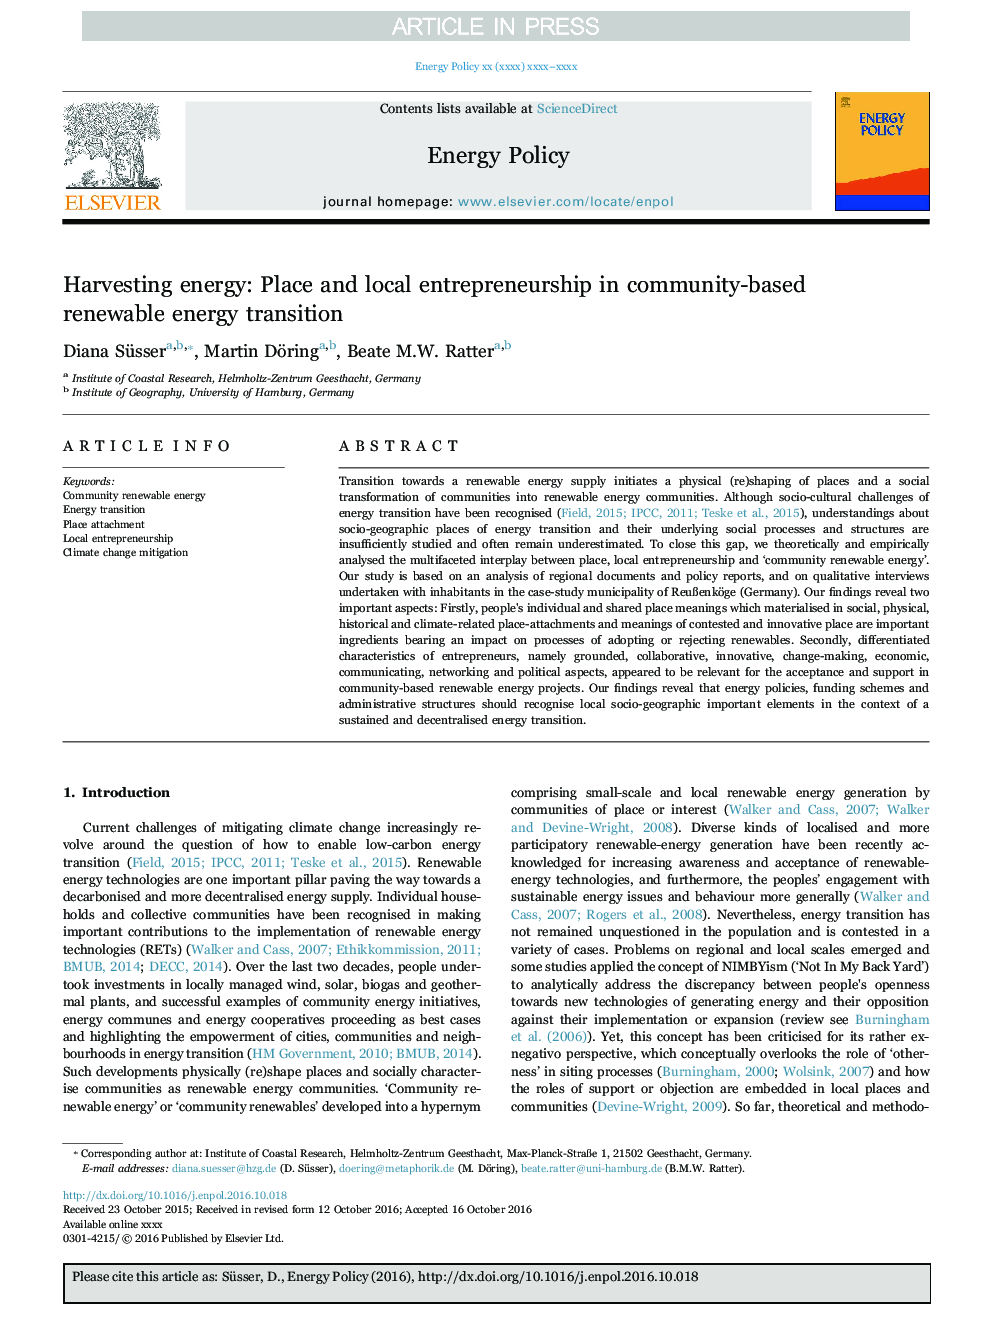 برداشت انرژی: محل و کارآفرینی محلی در انتقال انرژی های تجدید پذیر مبتنی بر جامعه 